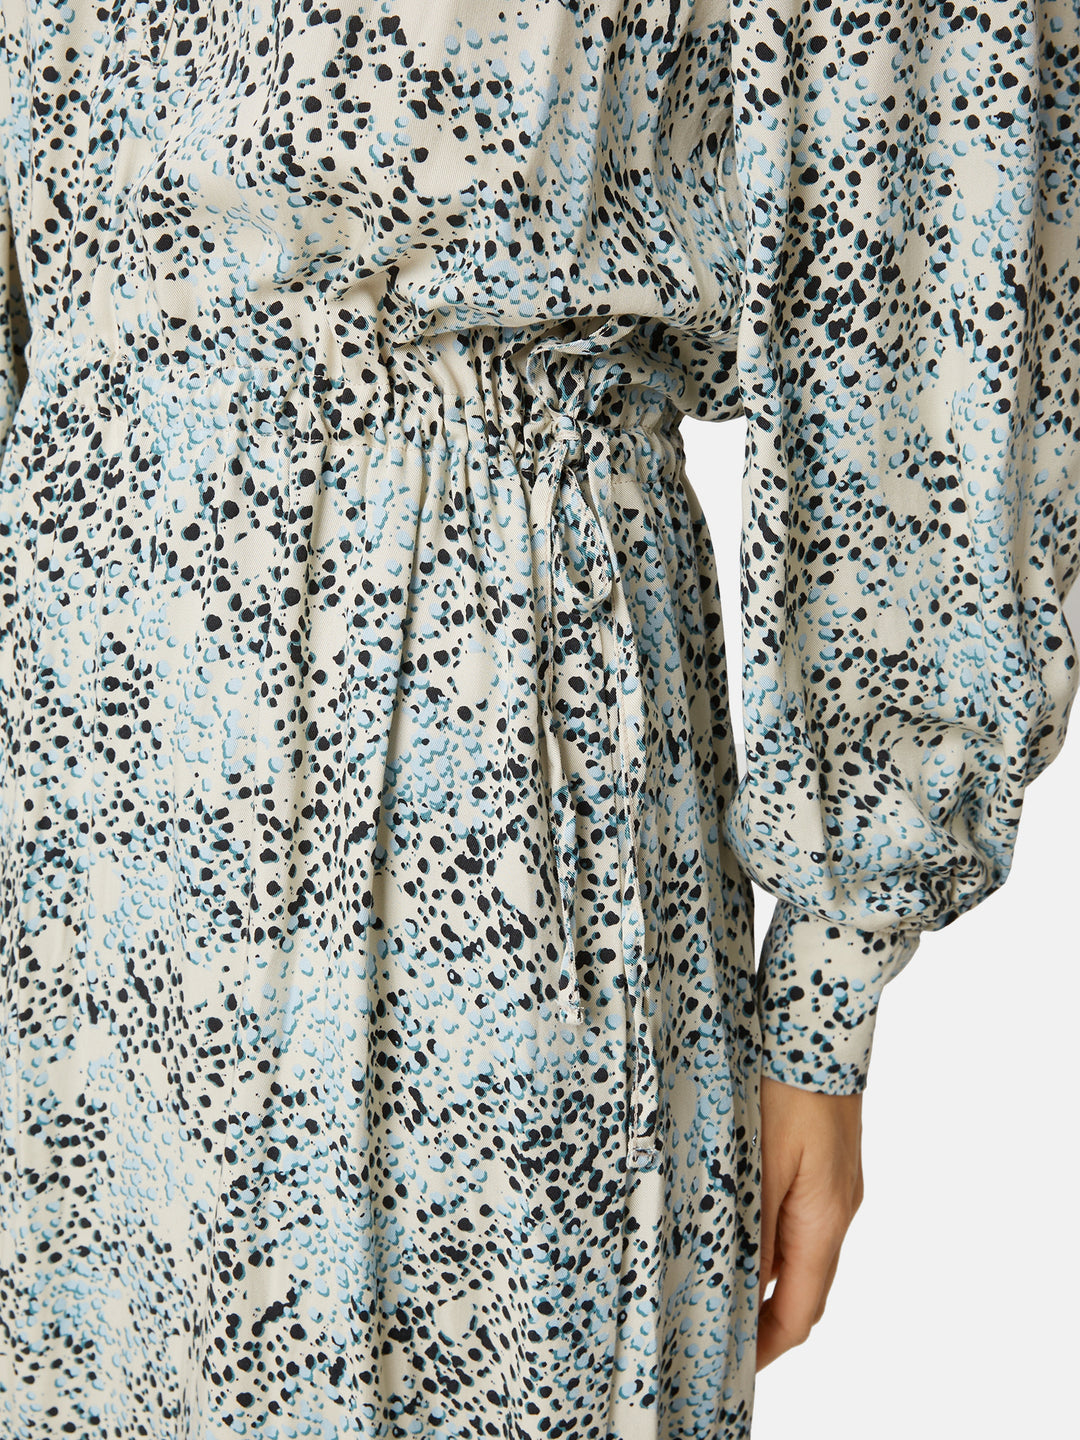 zomerse jurk met print - b. copenhagen - - grote maten - dameskleding - kledingwinkel - herent - leuven